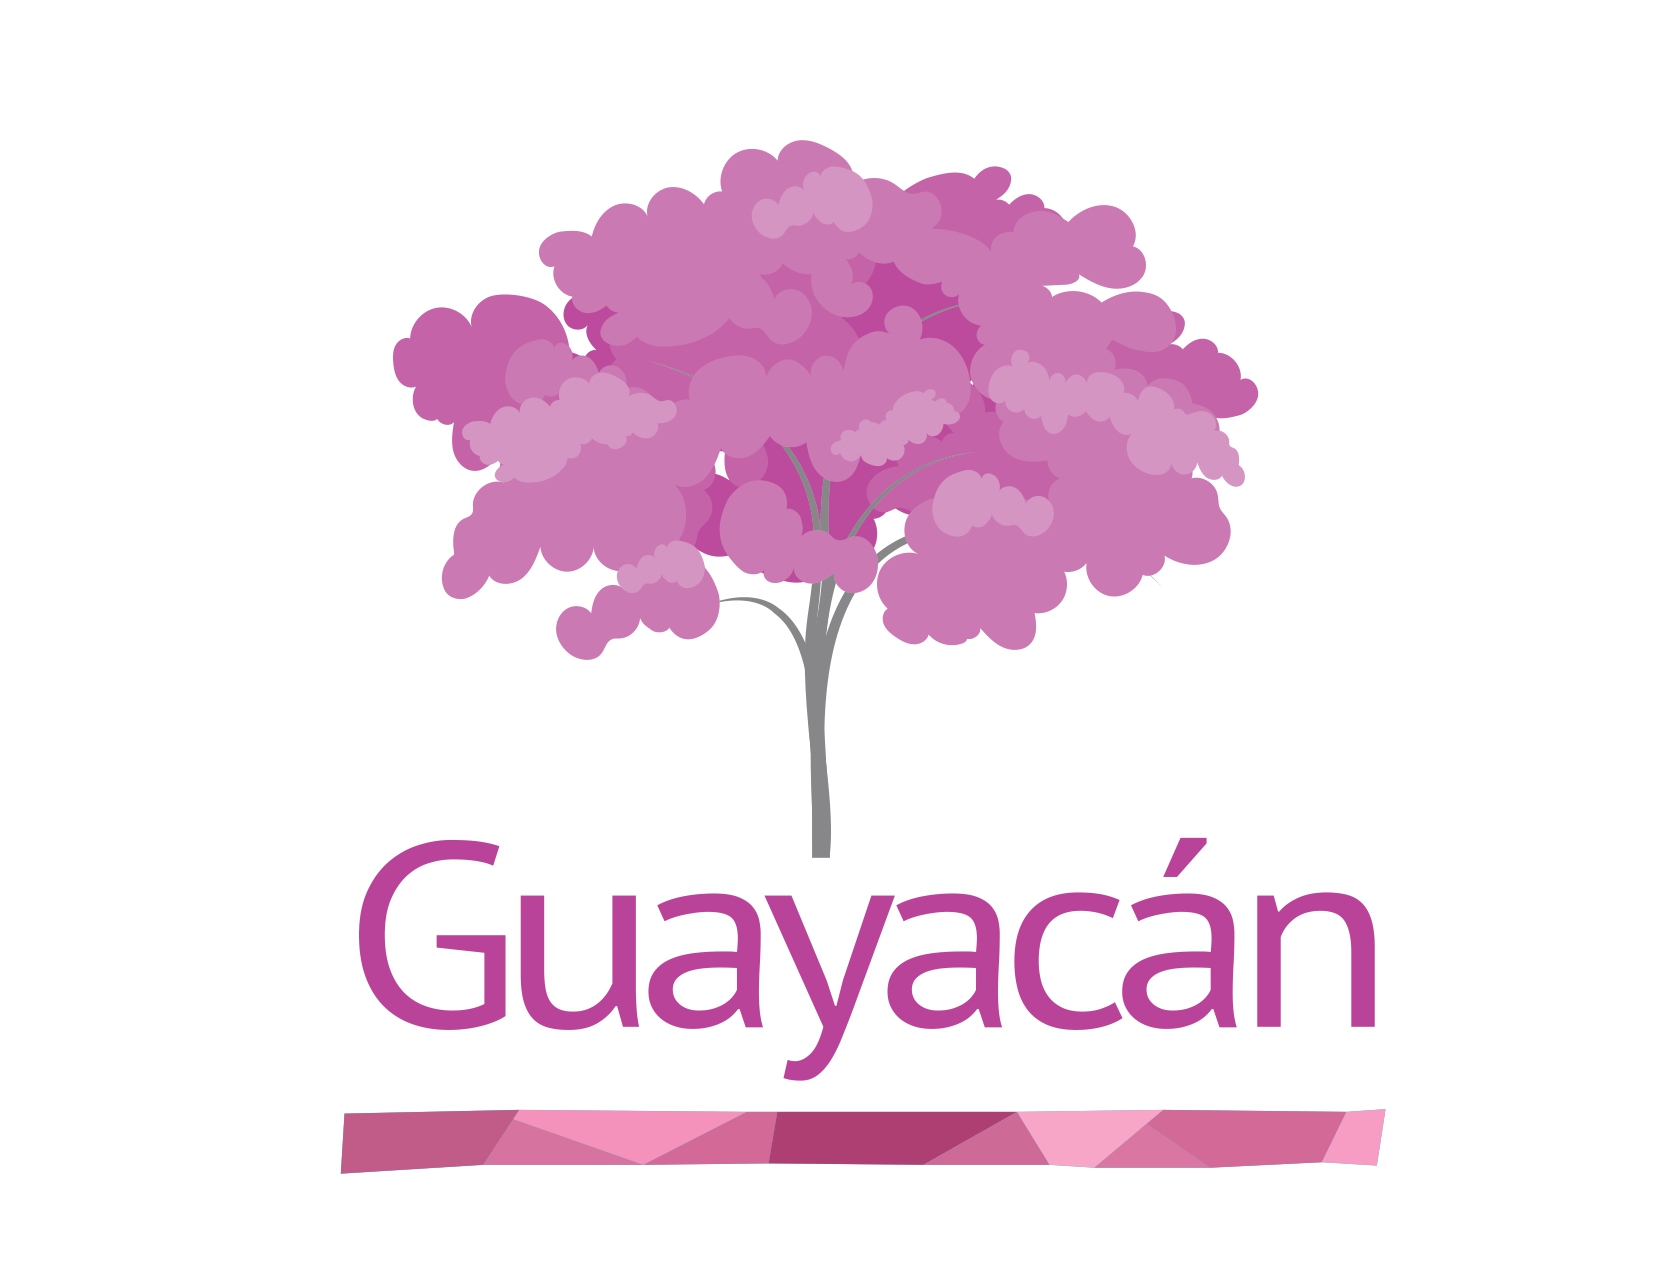 Ciudadela Guayacán 